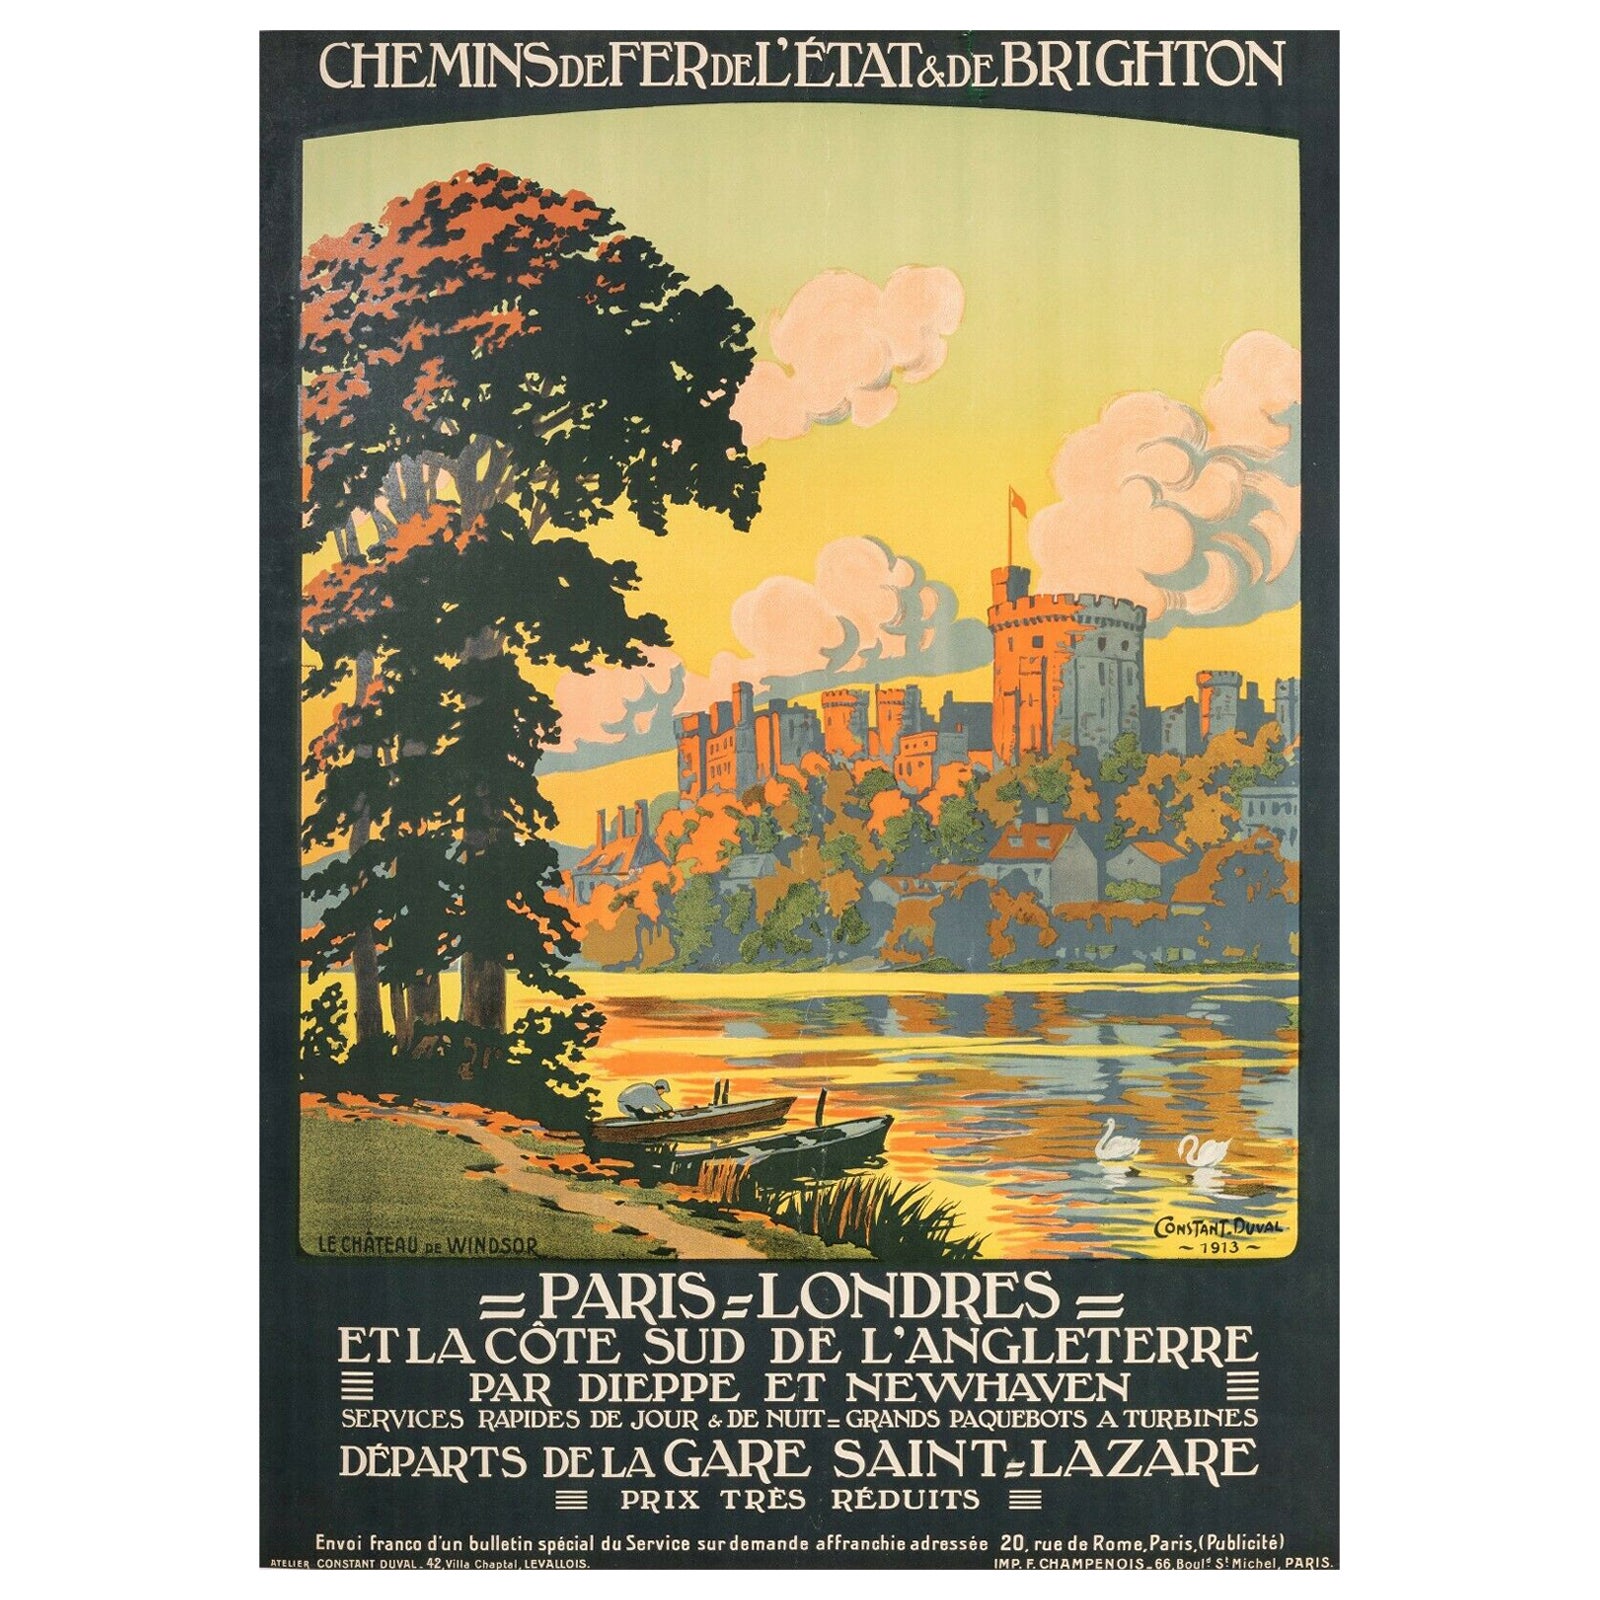 Original Poster-Constant Duval-Paris London-Brighton-England, 1913